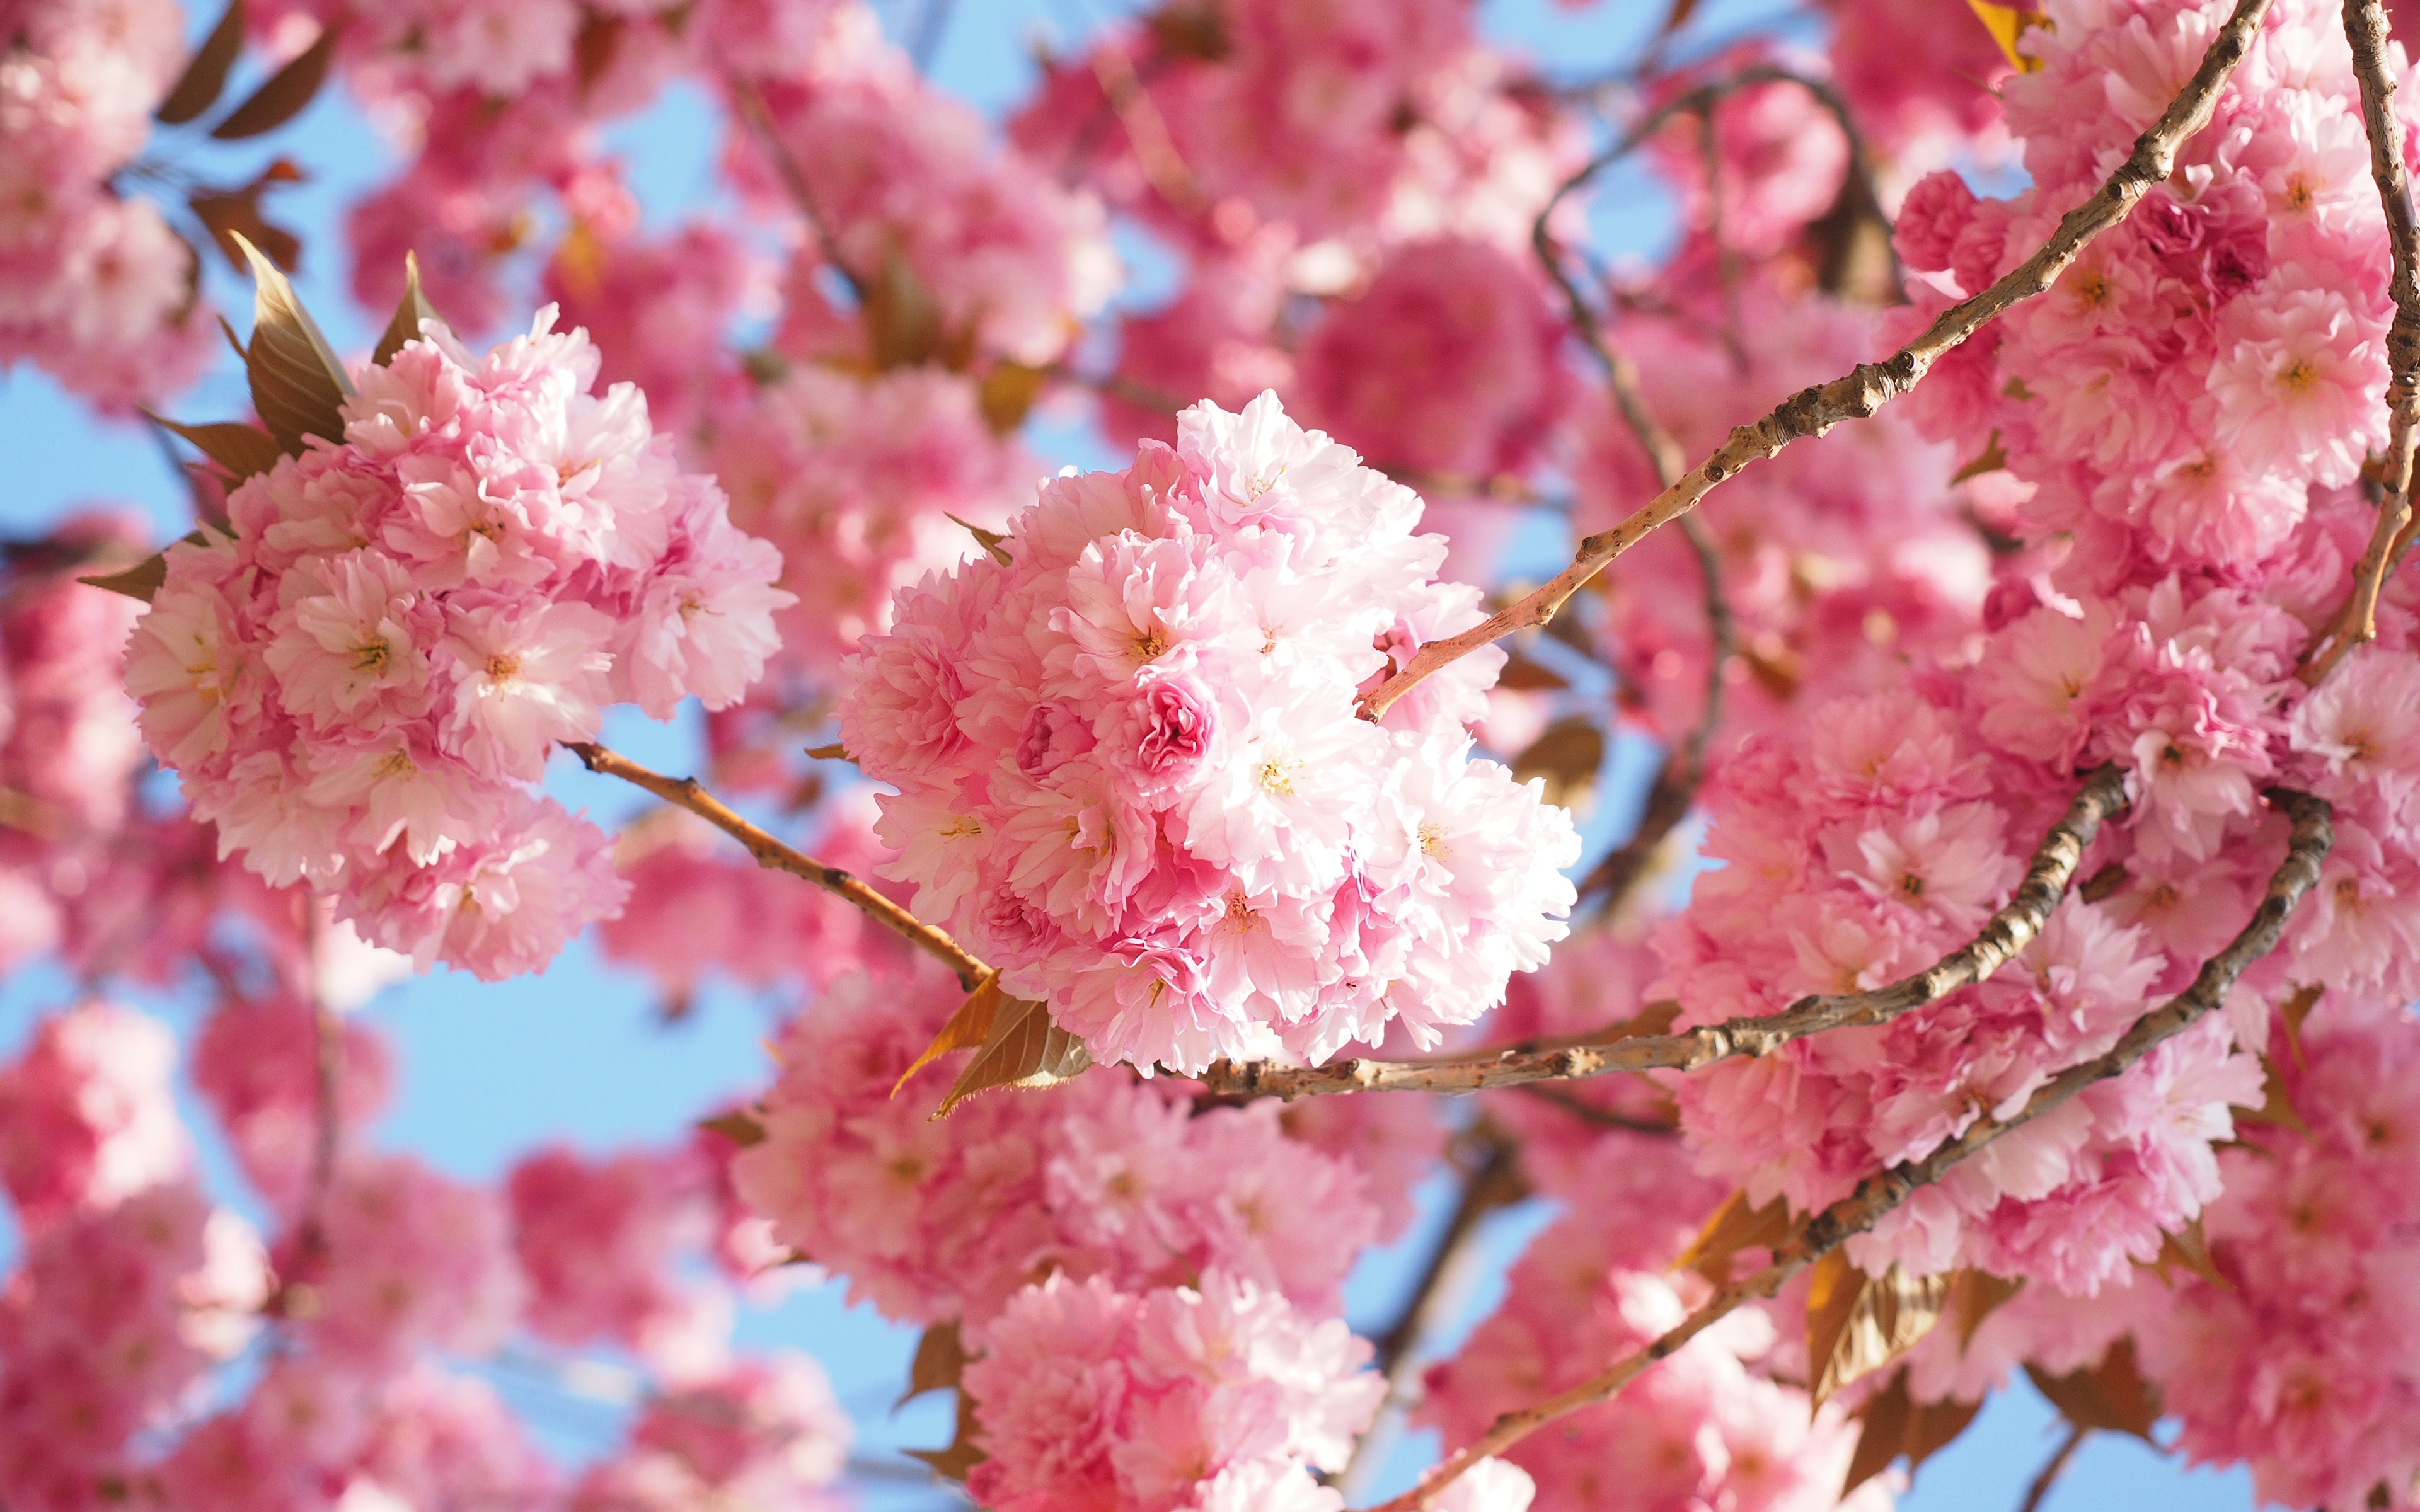 Hoa đào Tết là biểu tượng của sự may mắn và tài lộc trong năm mới. Hãy cùng ngắm nhìn những hình ảnh đầy màu sắc và rực rỡ của hoa đào Tết để tạo thêm không khí náo nhiệt và tình cảm đoàn viên cho ngày Tết đang đến gần.